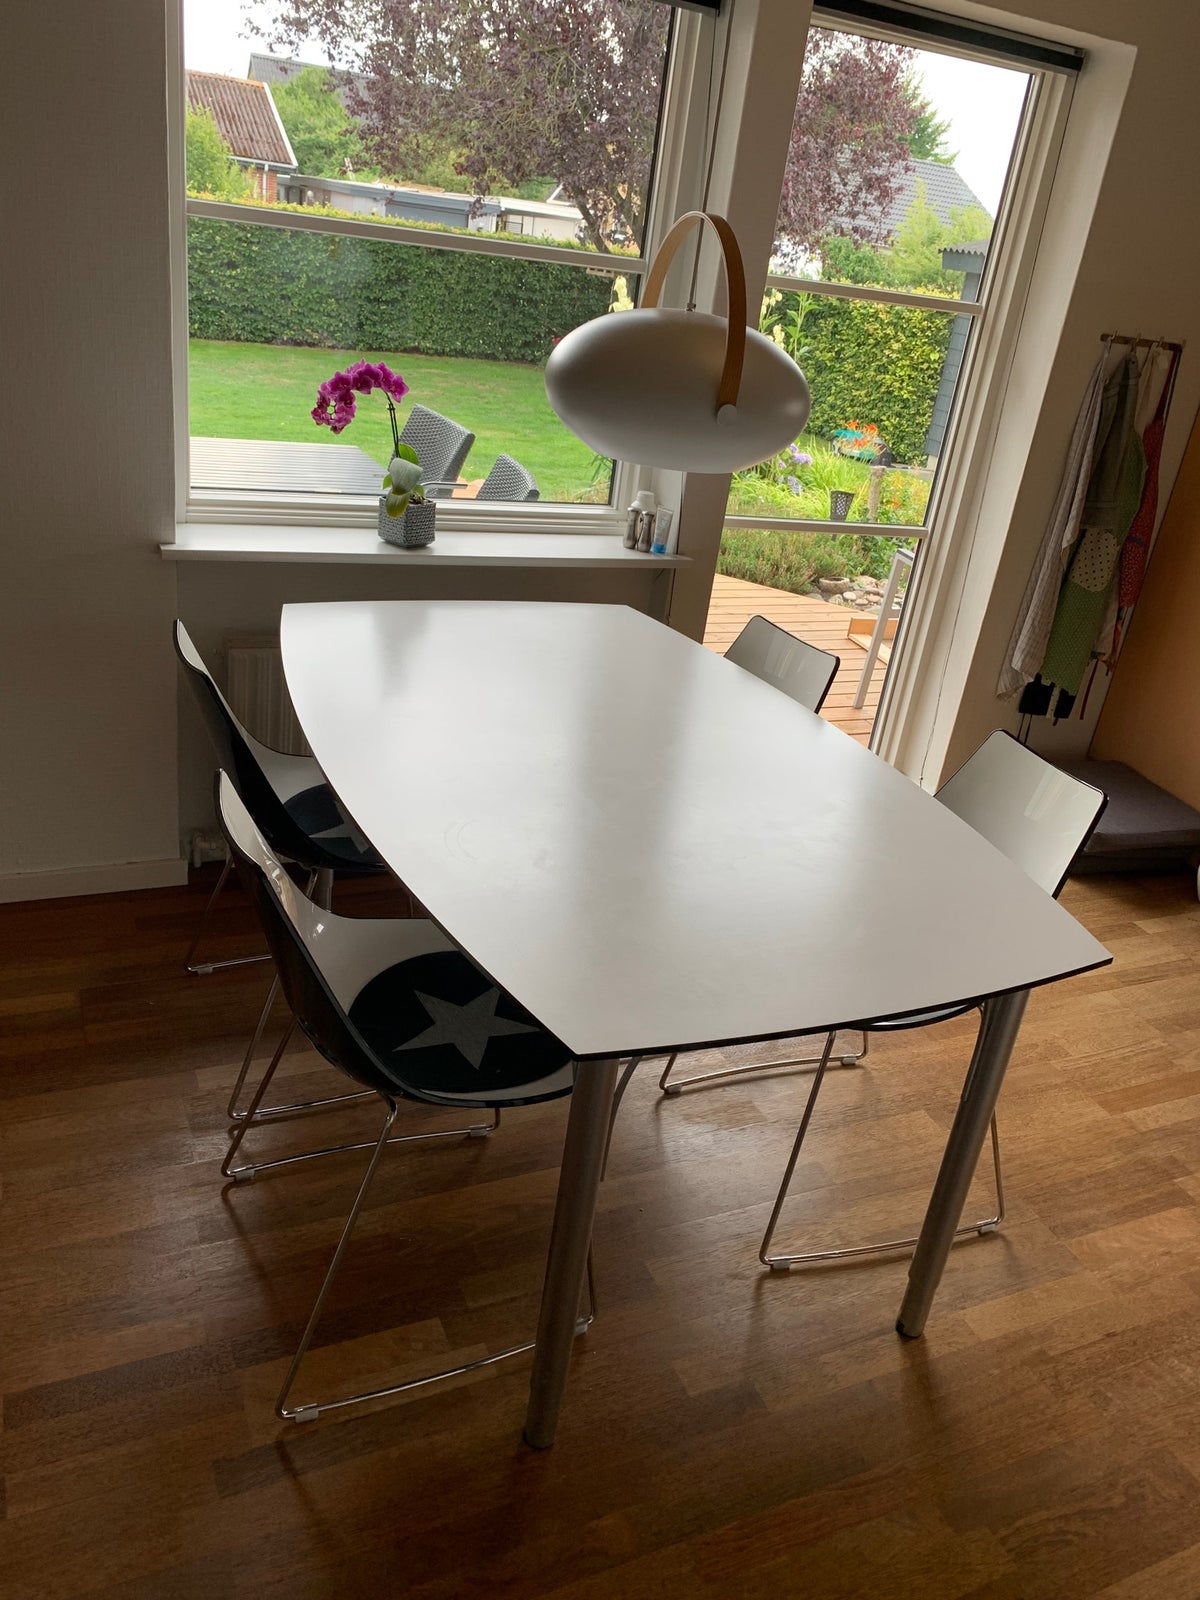 Forhøre Steward gyldige Spisebord m/stole, Hvid laminat med sort kant og 4 stole. , b: 100 l: 160 –  dba.dk – Køb og Salg af Nyt og Brugt